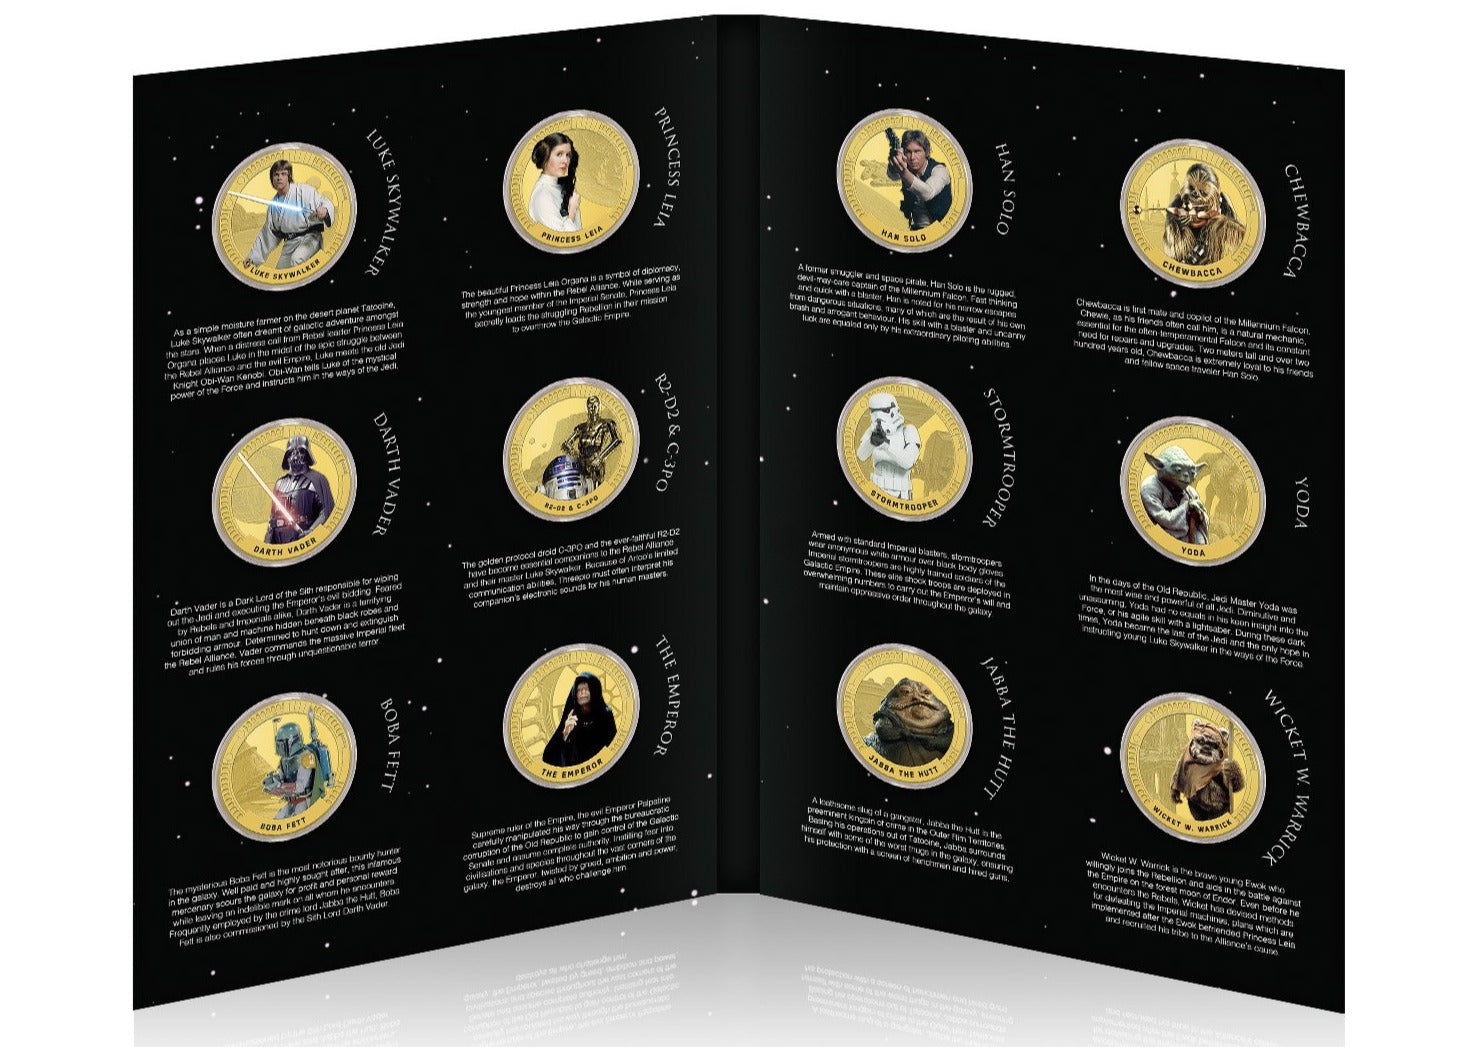 Star Wars Colección Completa Triología Original Episodios IV-VI - 12 Monedas / Medallas con baño en Oro 24 quilates y coloreadas a 4 colores - 44mm